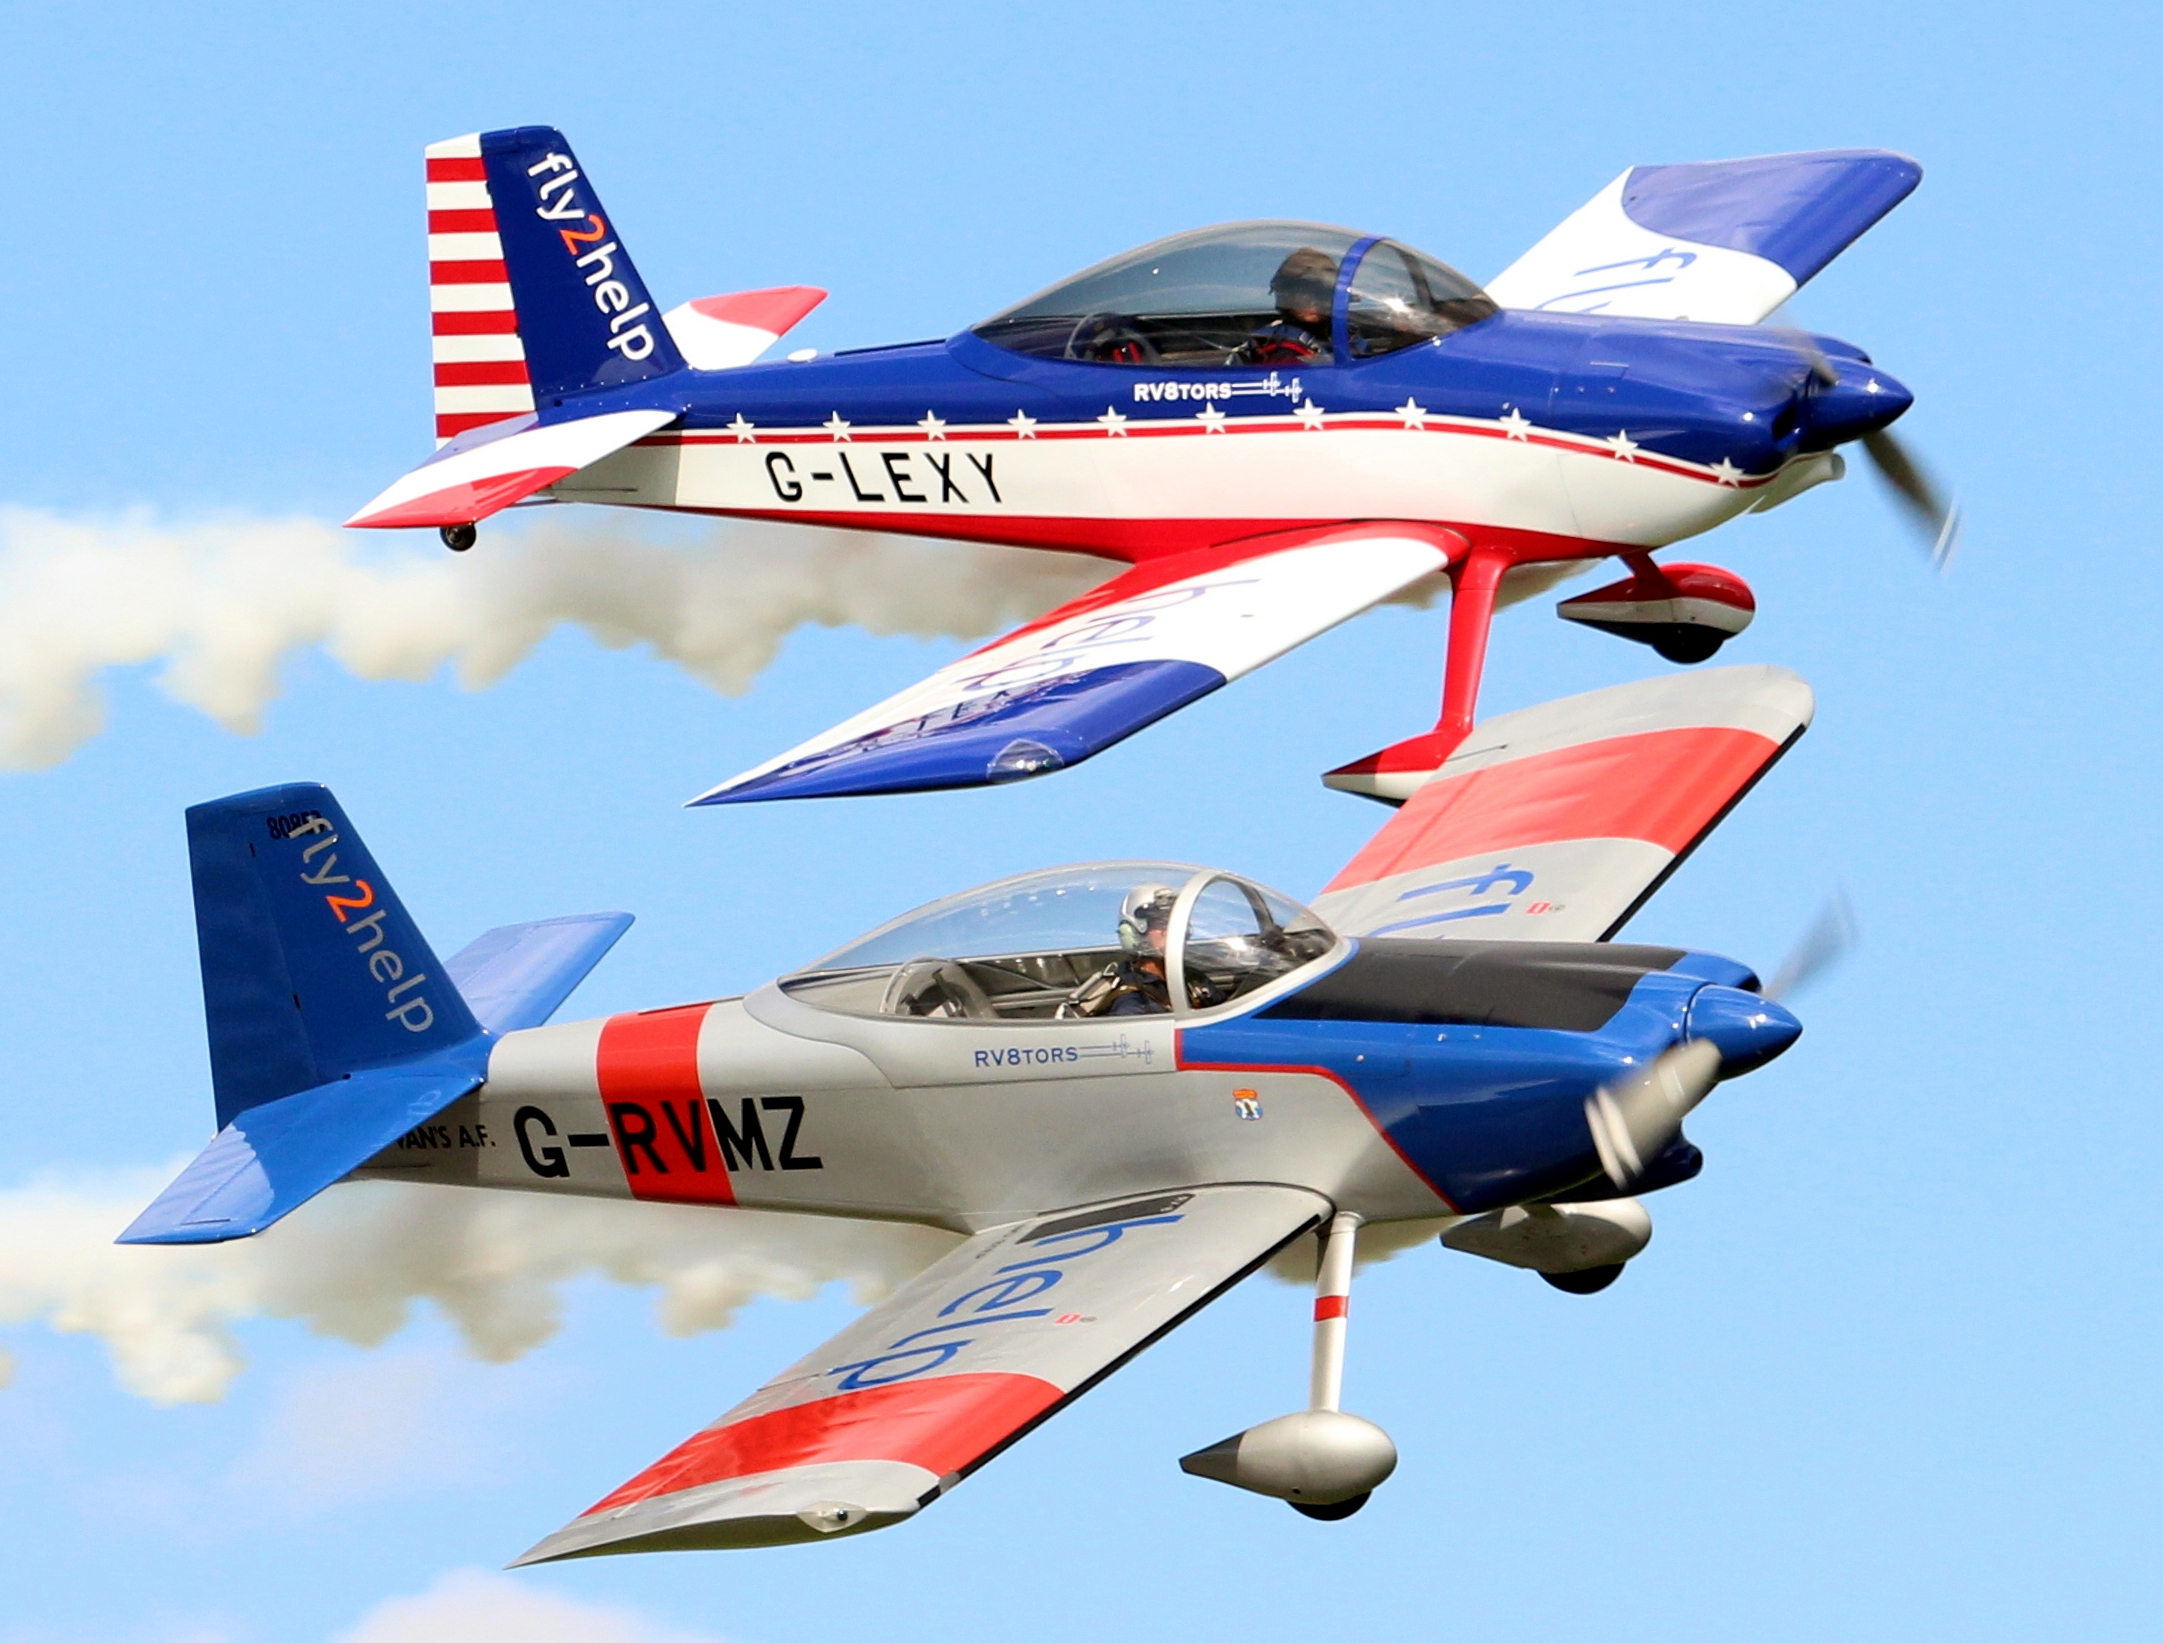 Rv8tors aerobatic display team © Steve Hawthorne 